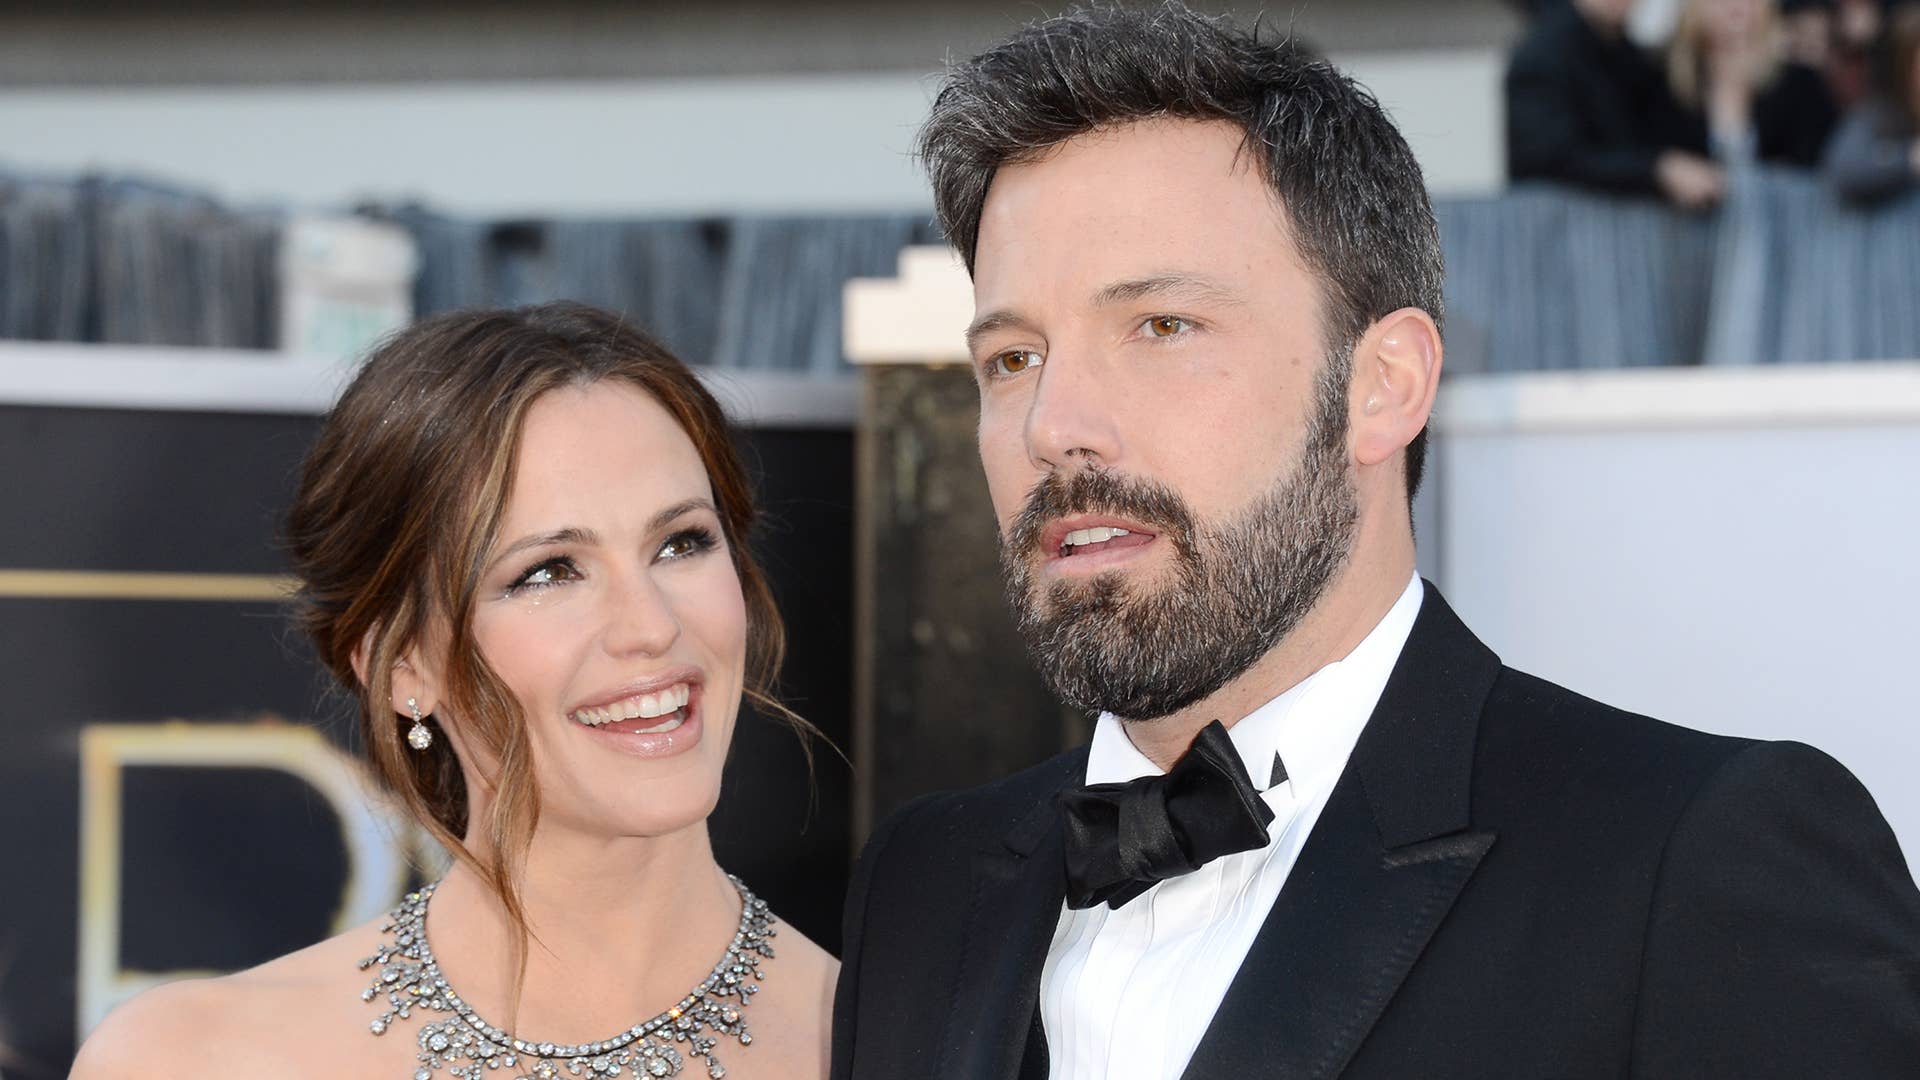 Jennifer Garner and her ex husband Ben Affleck pictured at the Oscars in 2013.